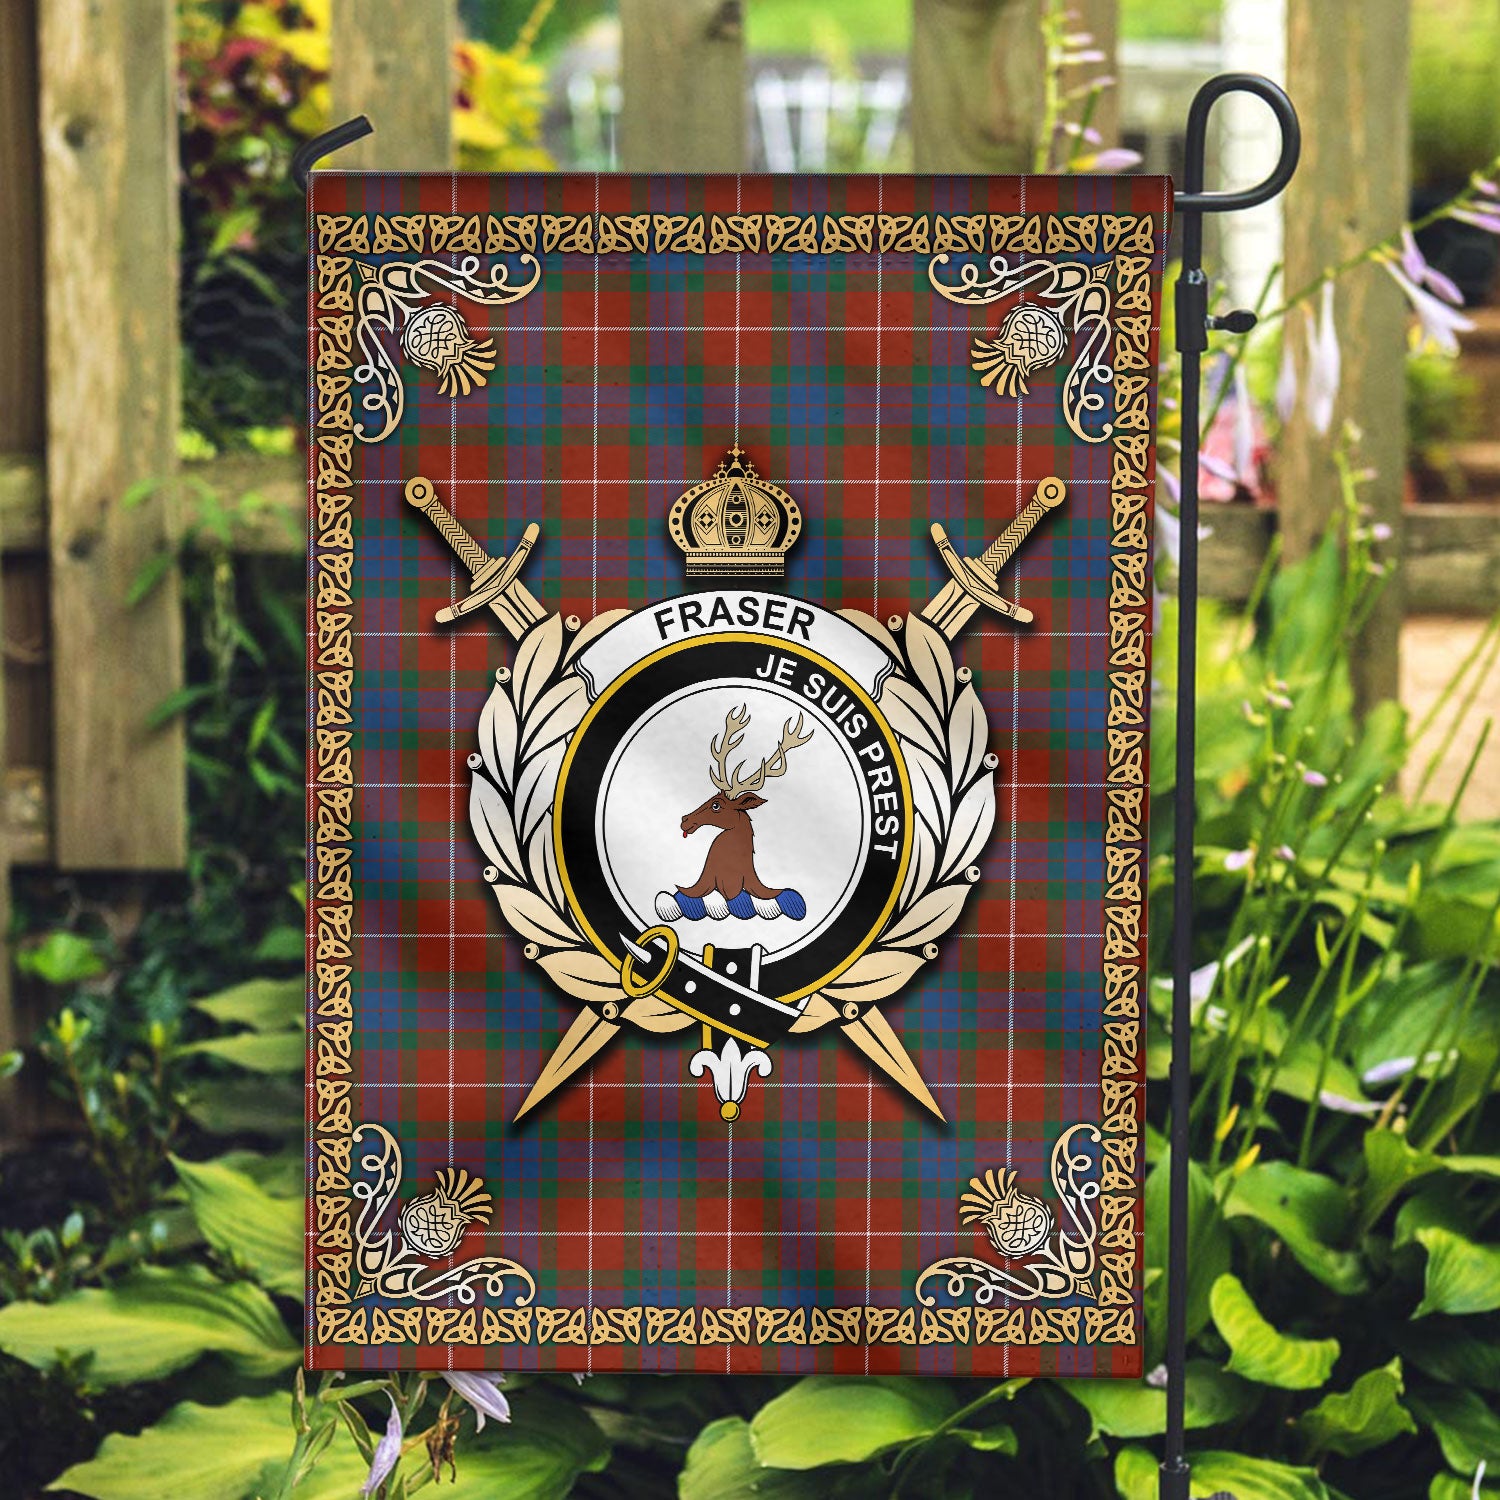 Fraser (of Lovat) Ancient Tartan Crest Garden Flag - Celtic Thistle Style